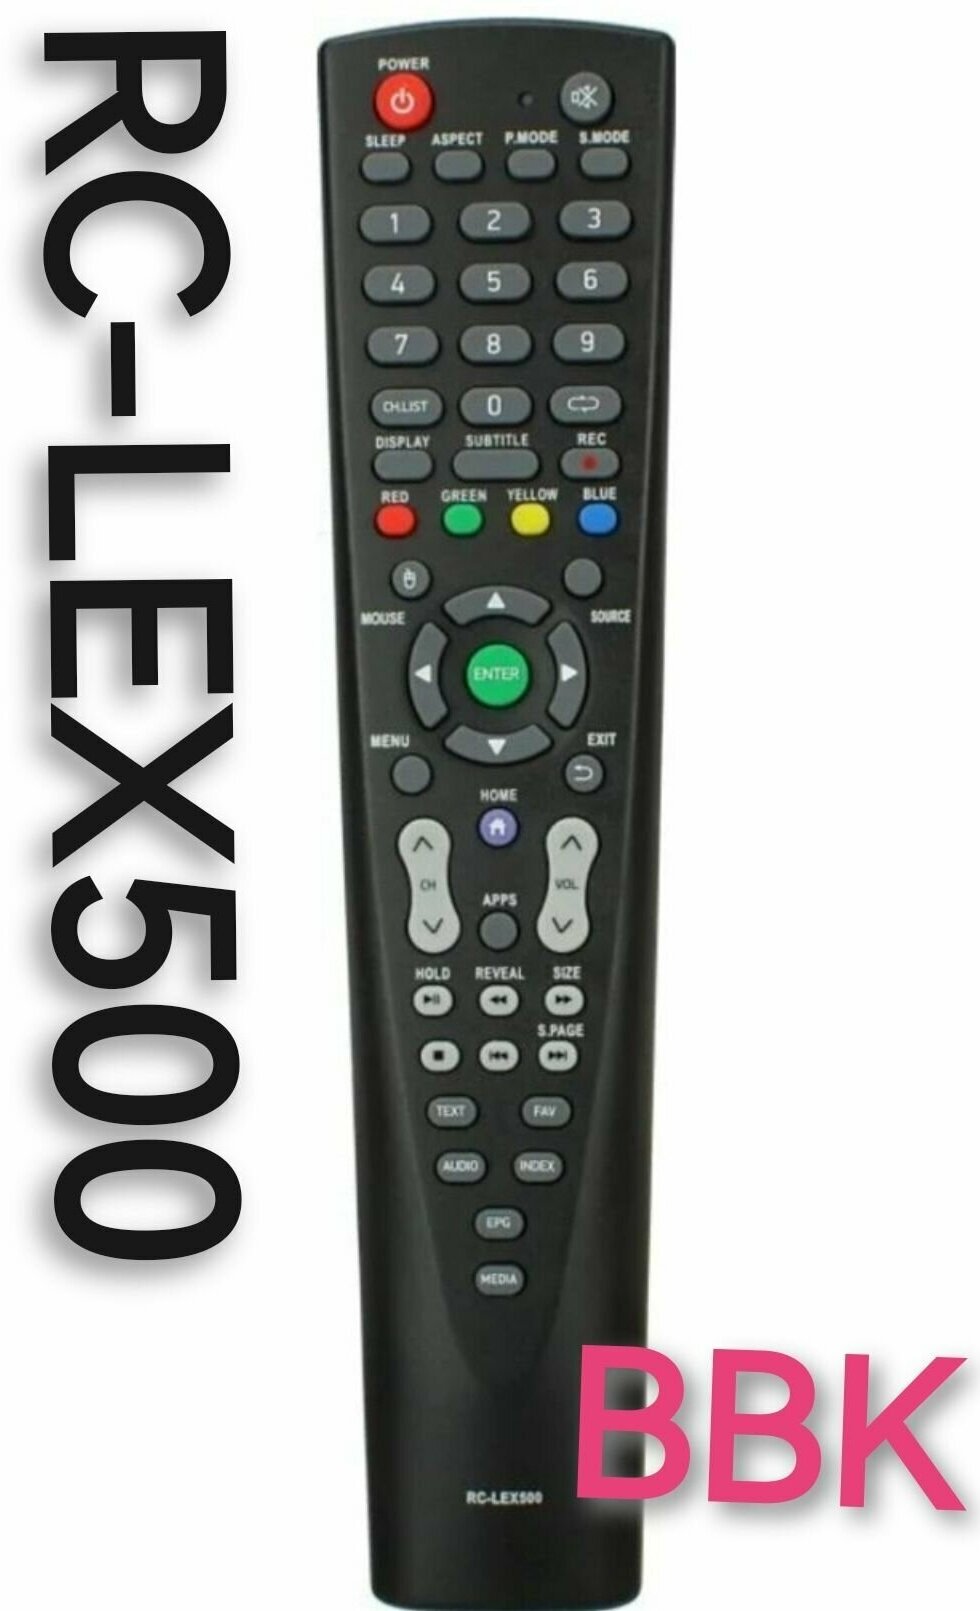 Пульт Rc-lex500 для BBK/БИ би кей /ббк телевизора